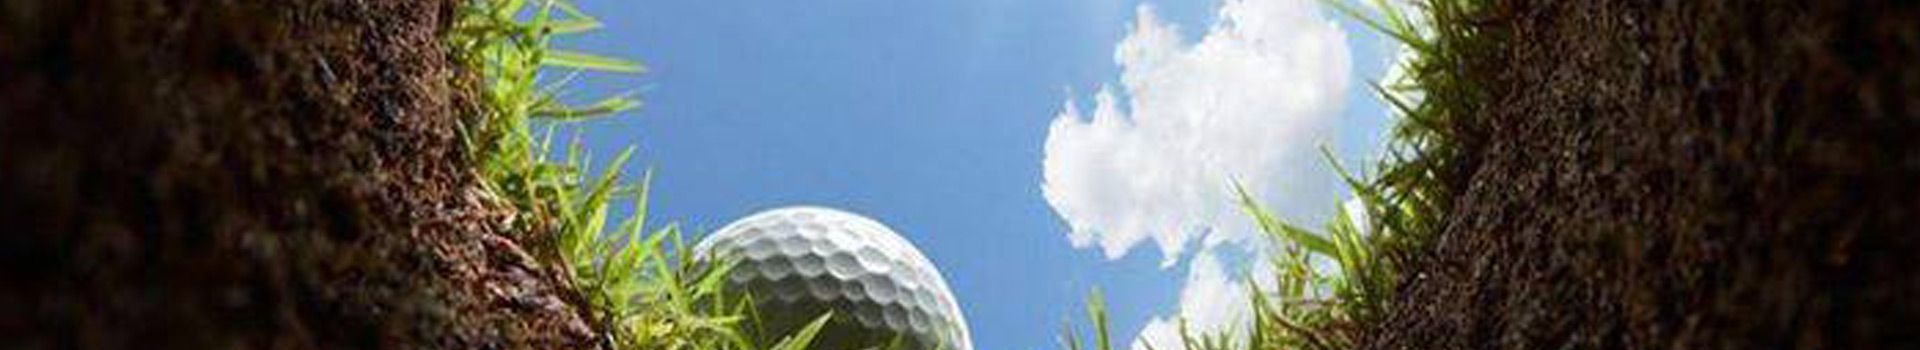 BCgolfguide.com Golf Travel Services